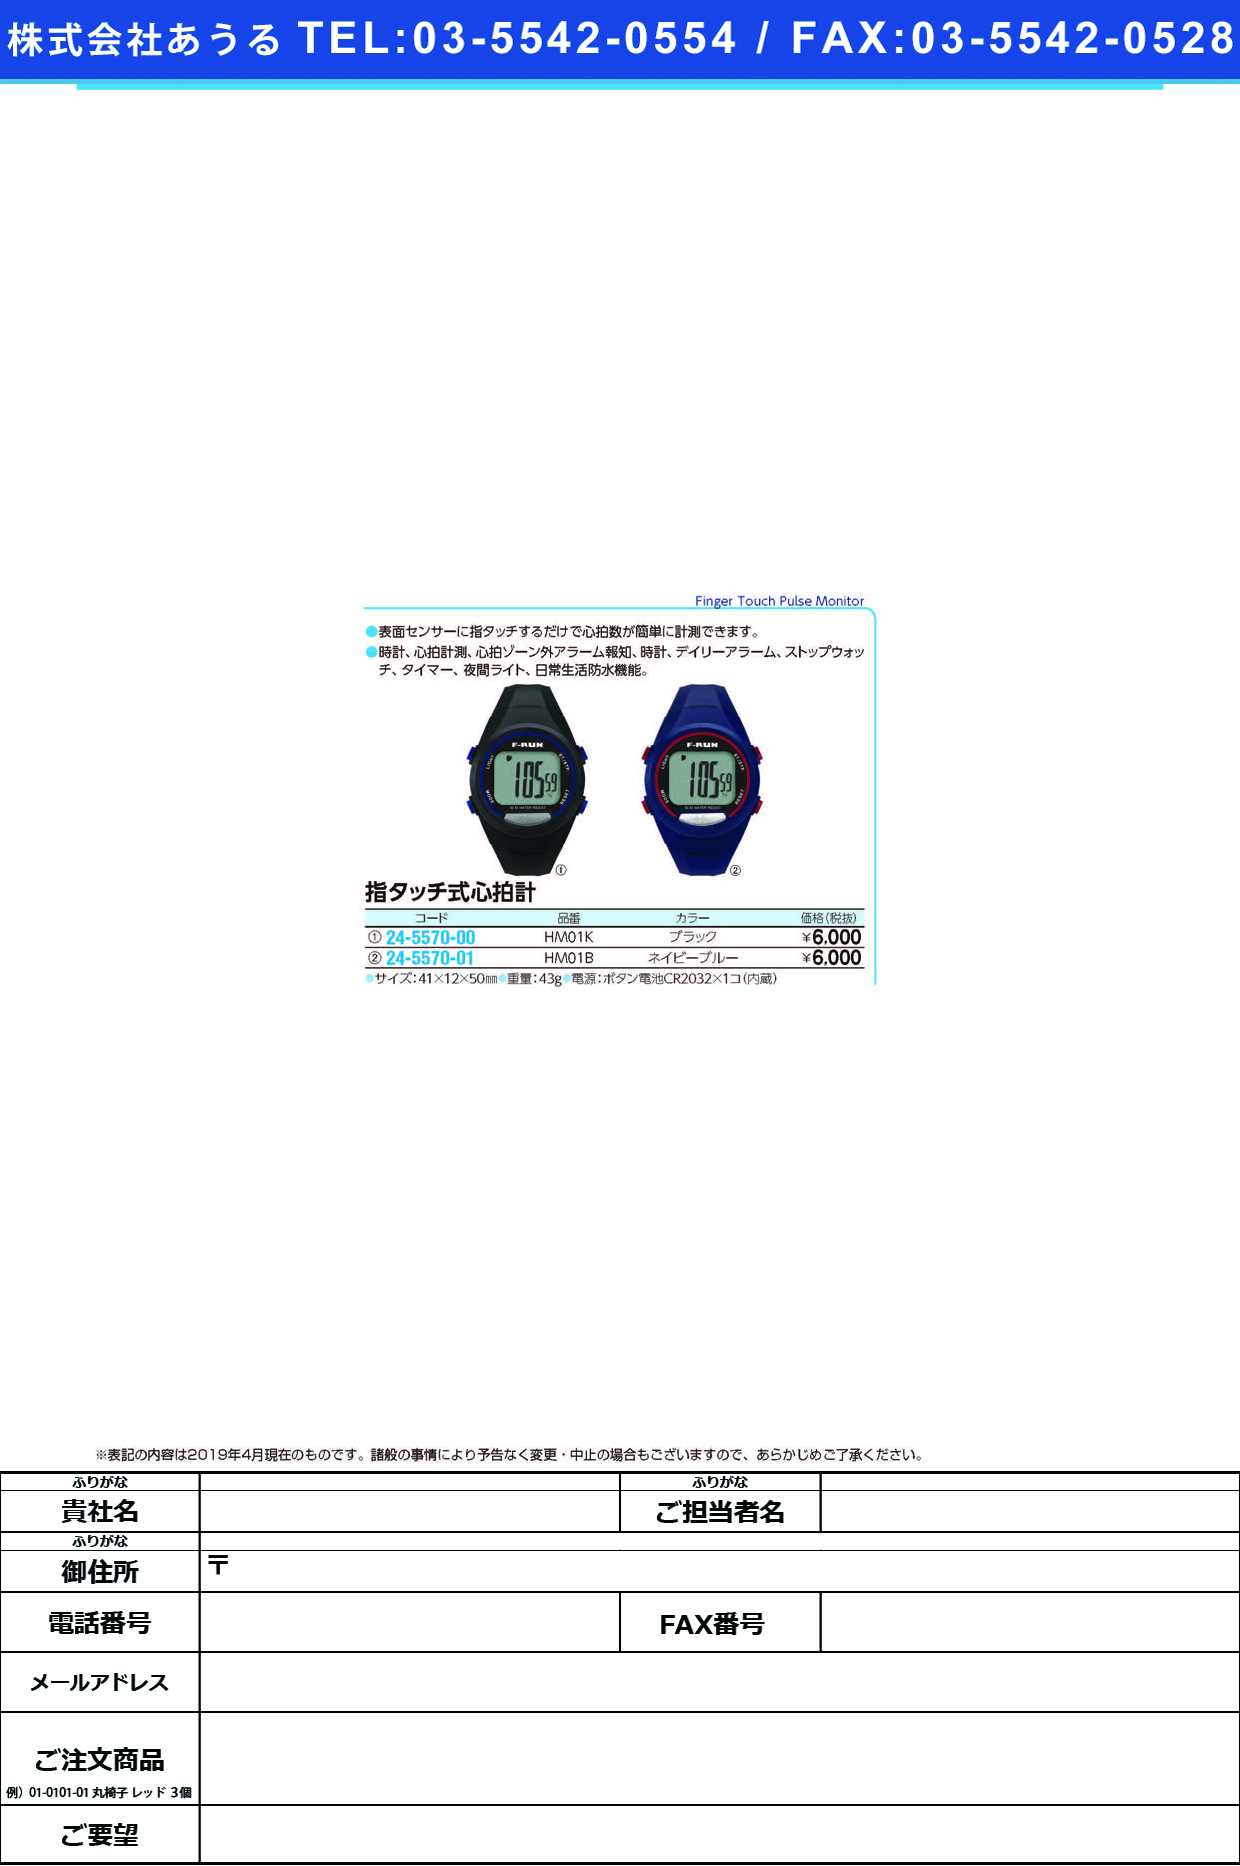 (24-5570-00)指タッチ式心拍計（ハートメーター） HM01K(ﾌﾞﾗｯｸ) ﾕﾋﾞﾀｯﾁｼｷｼﾝﾊﾟｸｹｲ【1個単位】【2019年カタログ商品】